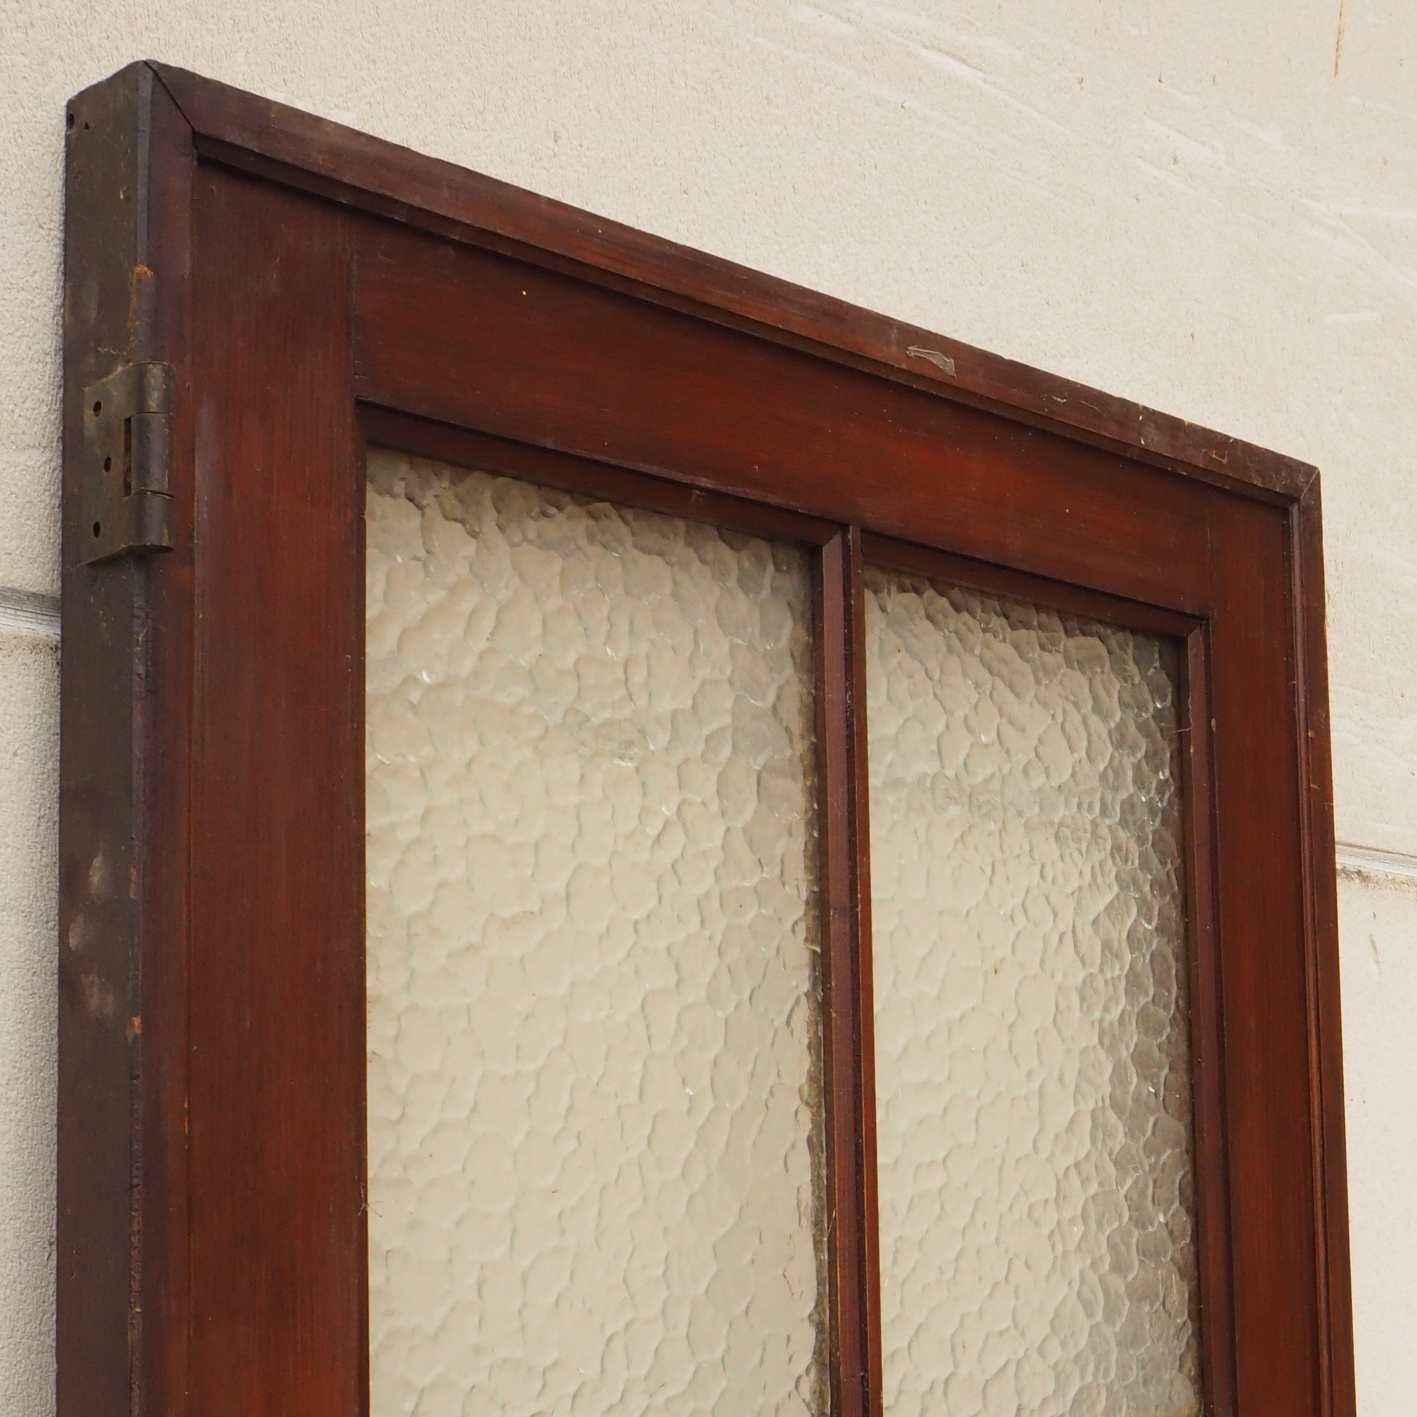 Door in wood with glass panels